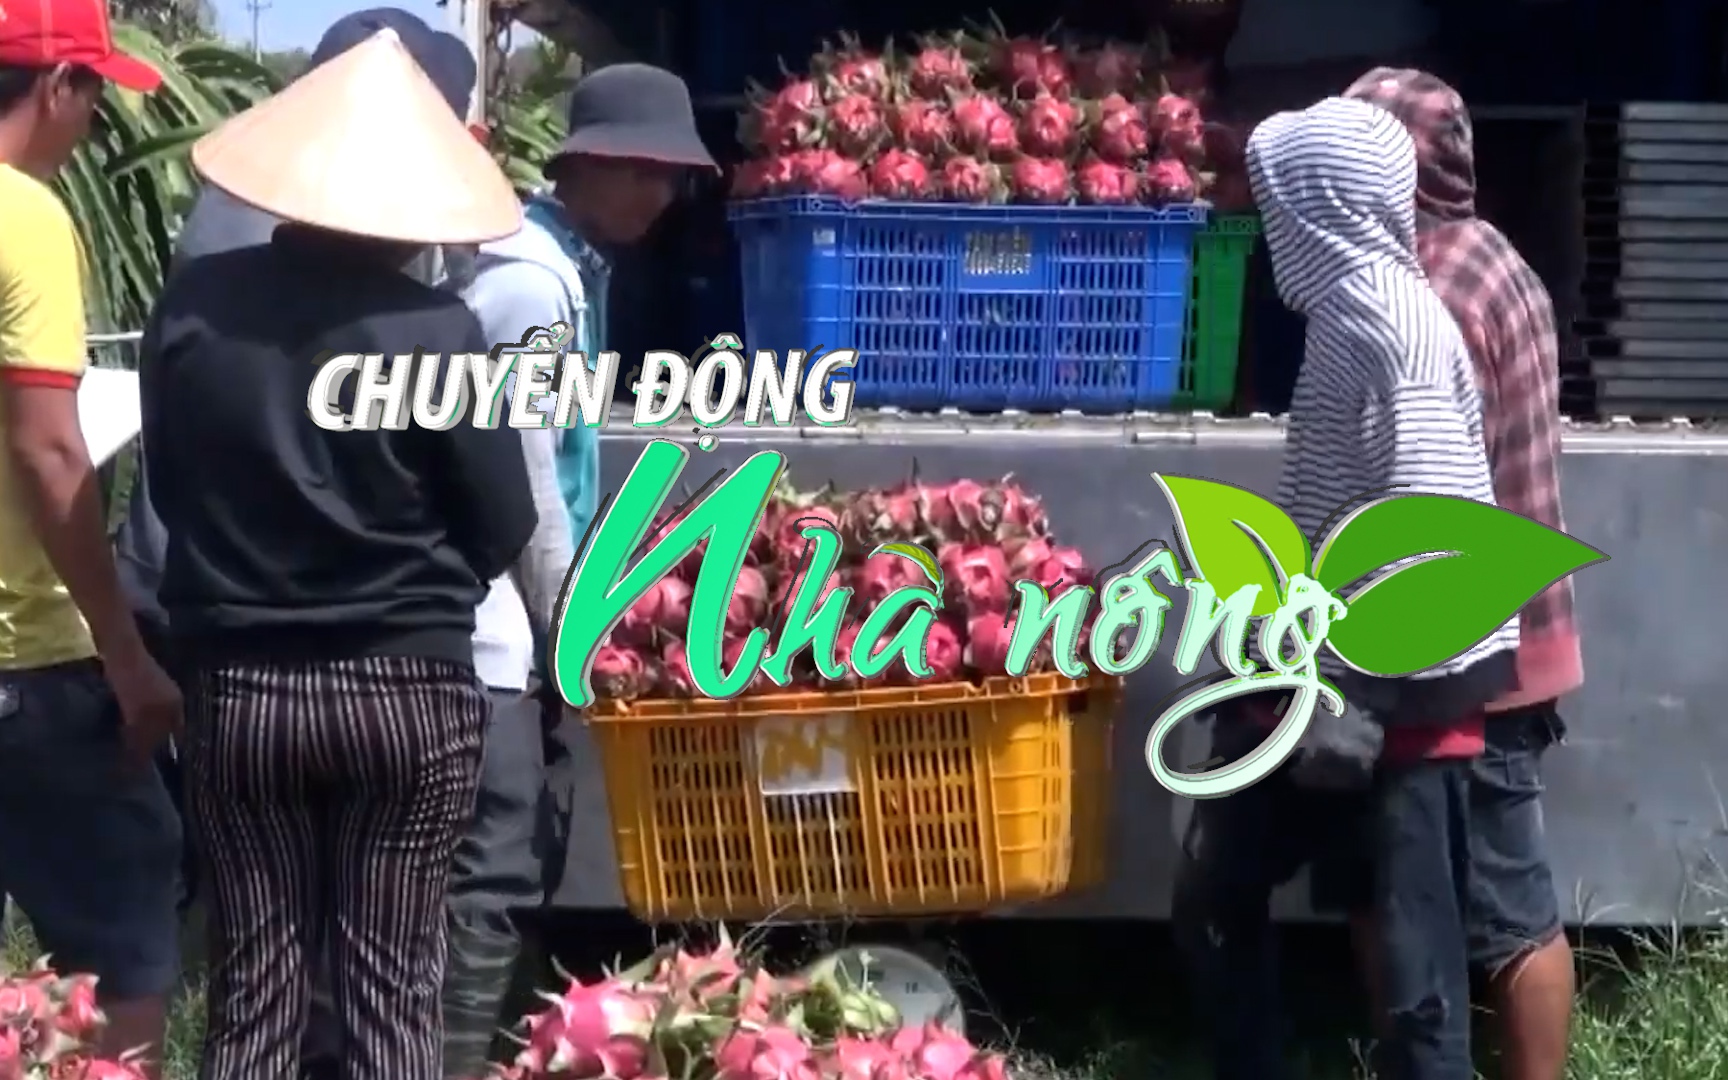 Chuyển động Nhà nông 5/9: Việc xuất khẩu thanh long Việt Nam sang Anh vẫn diễn ra bình thường